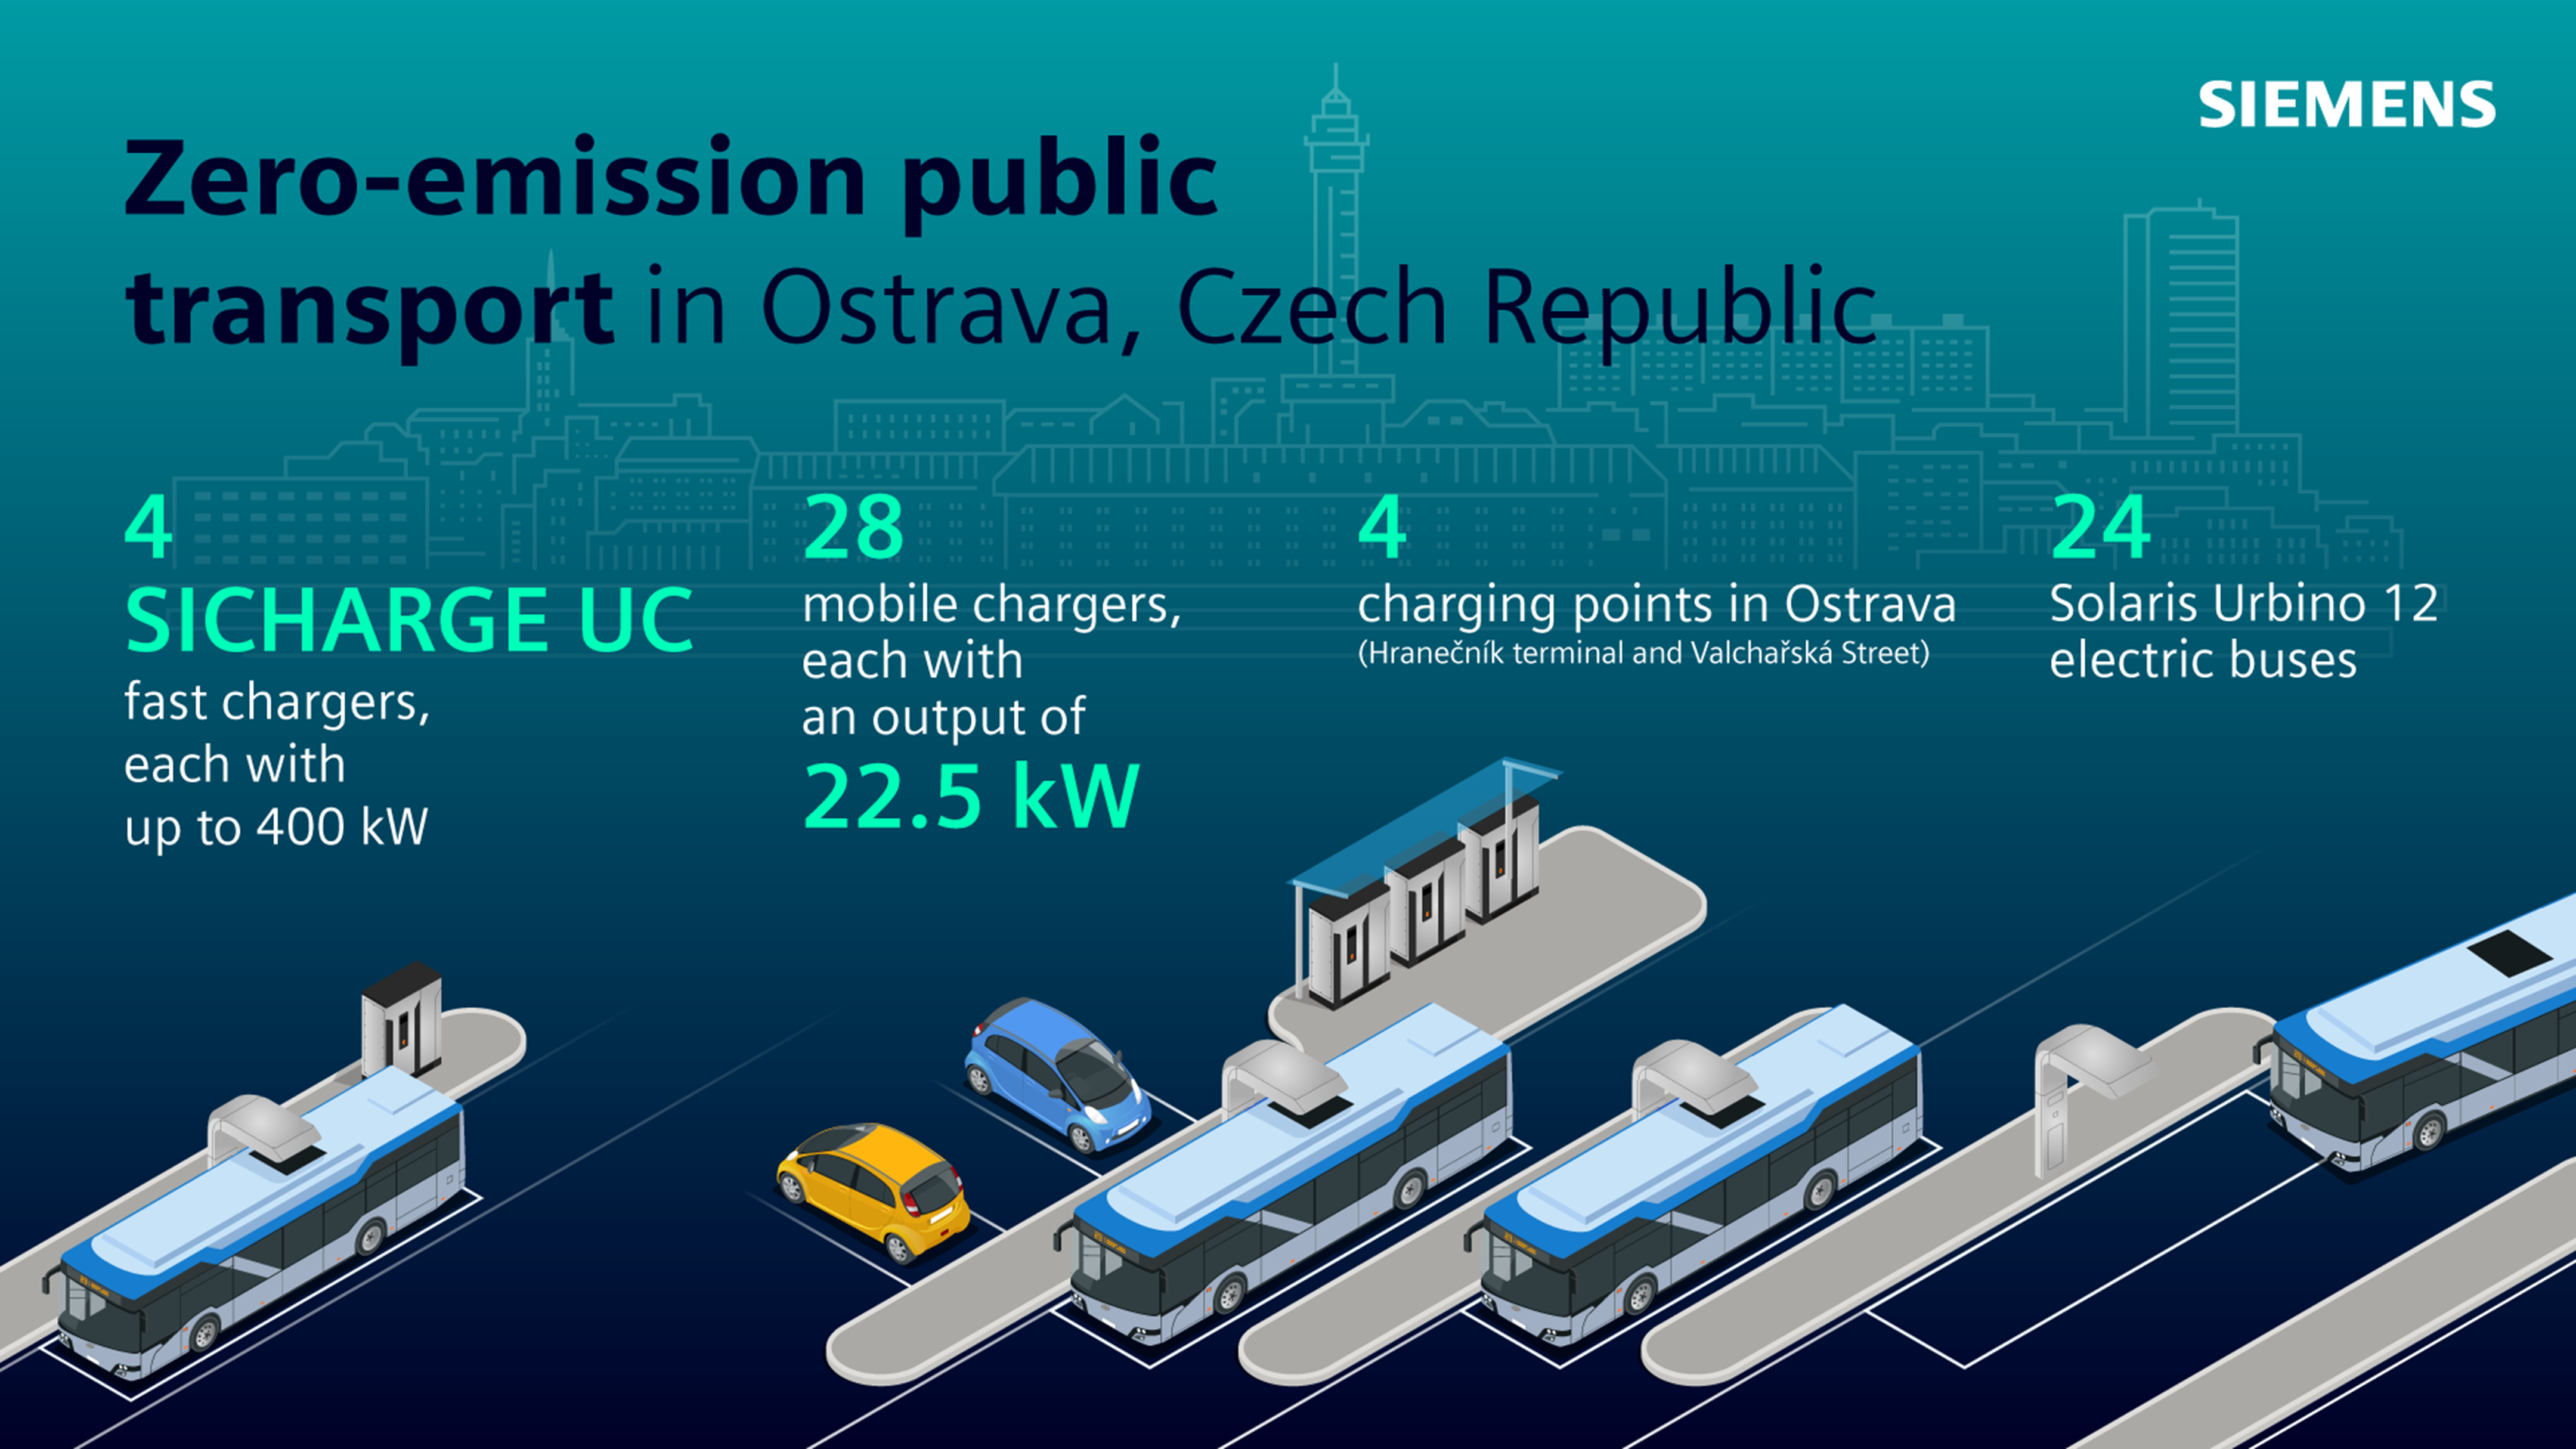 Zero-emission public transport in Ostrava.